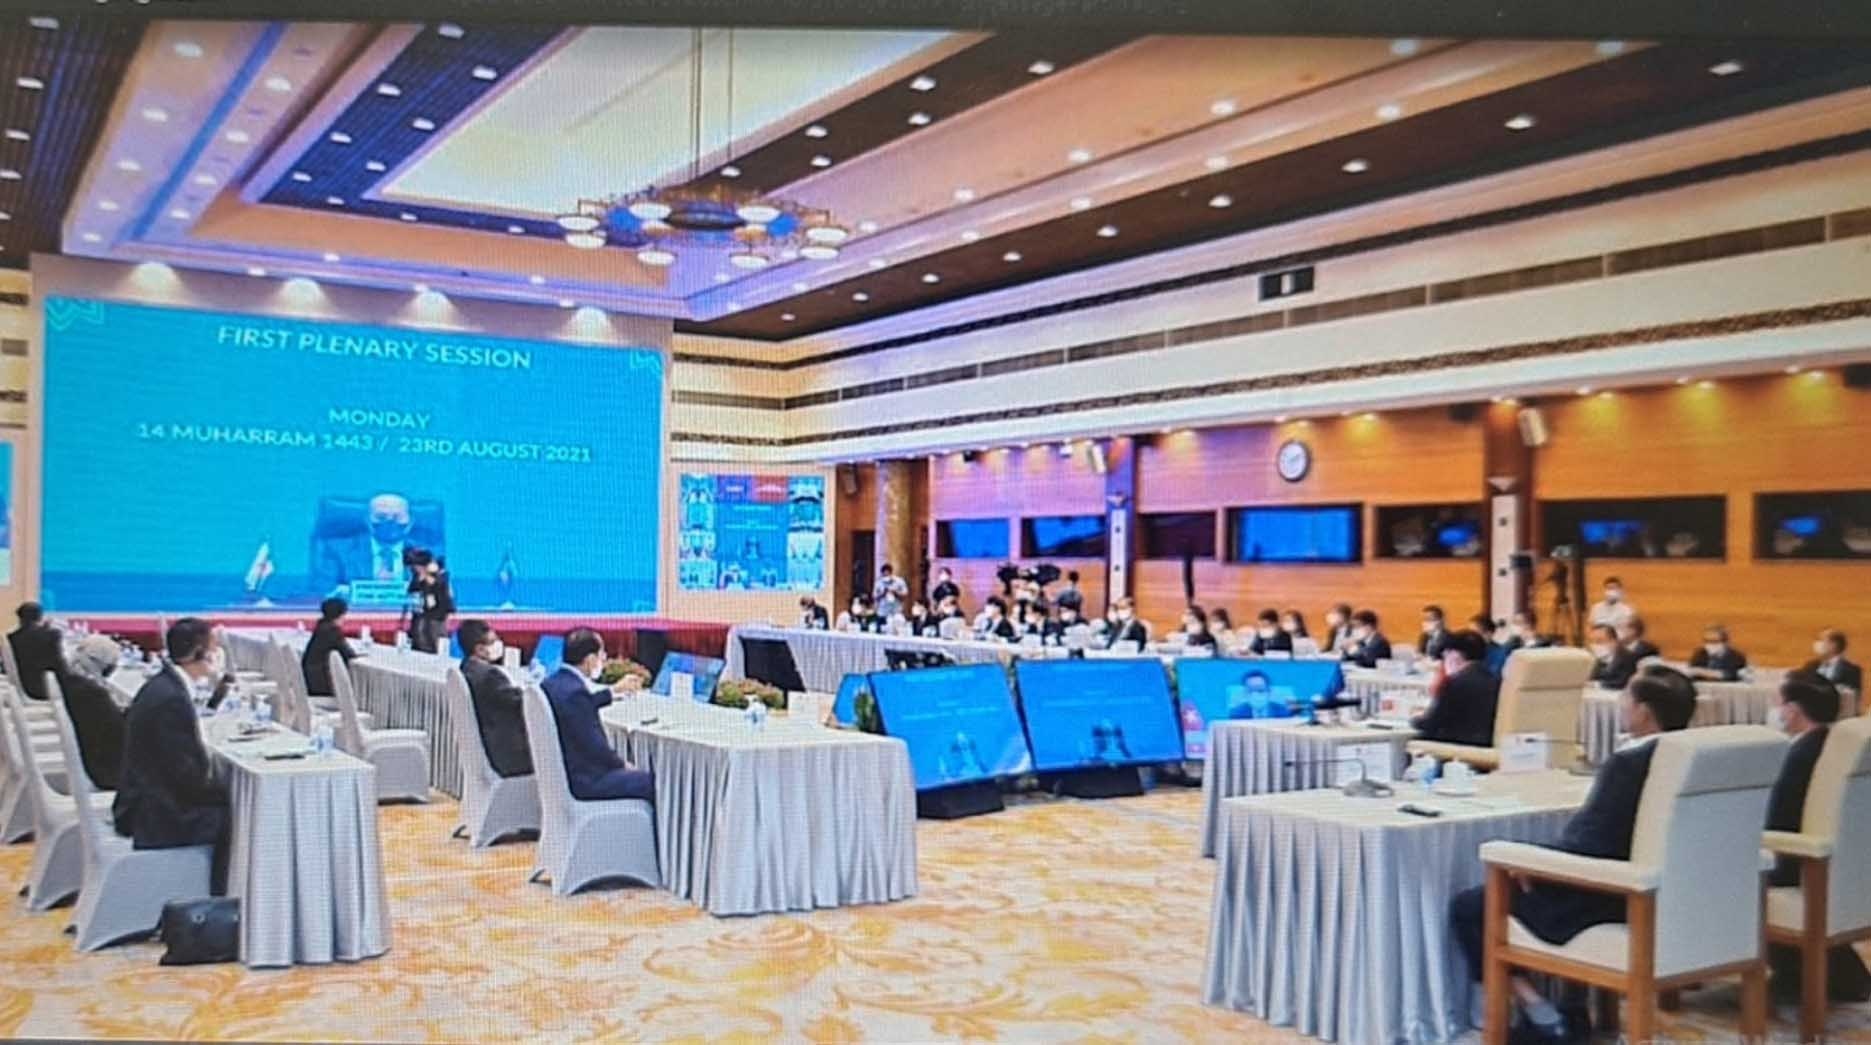 AIPA 42: Hiện thực hóa kỹ thuật số bao trùm trong ASEAN